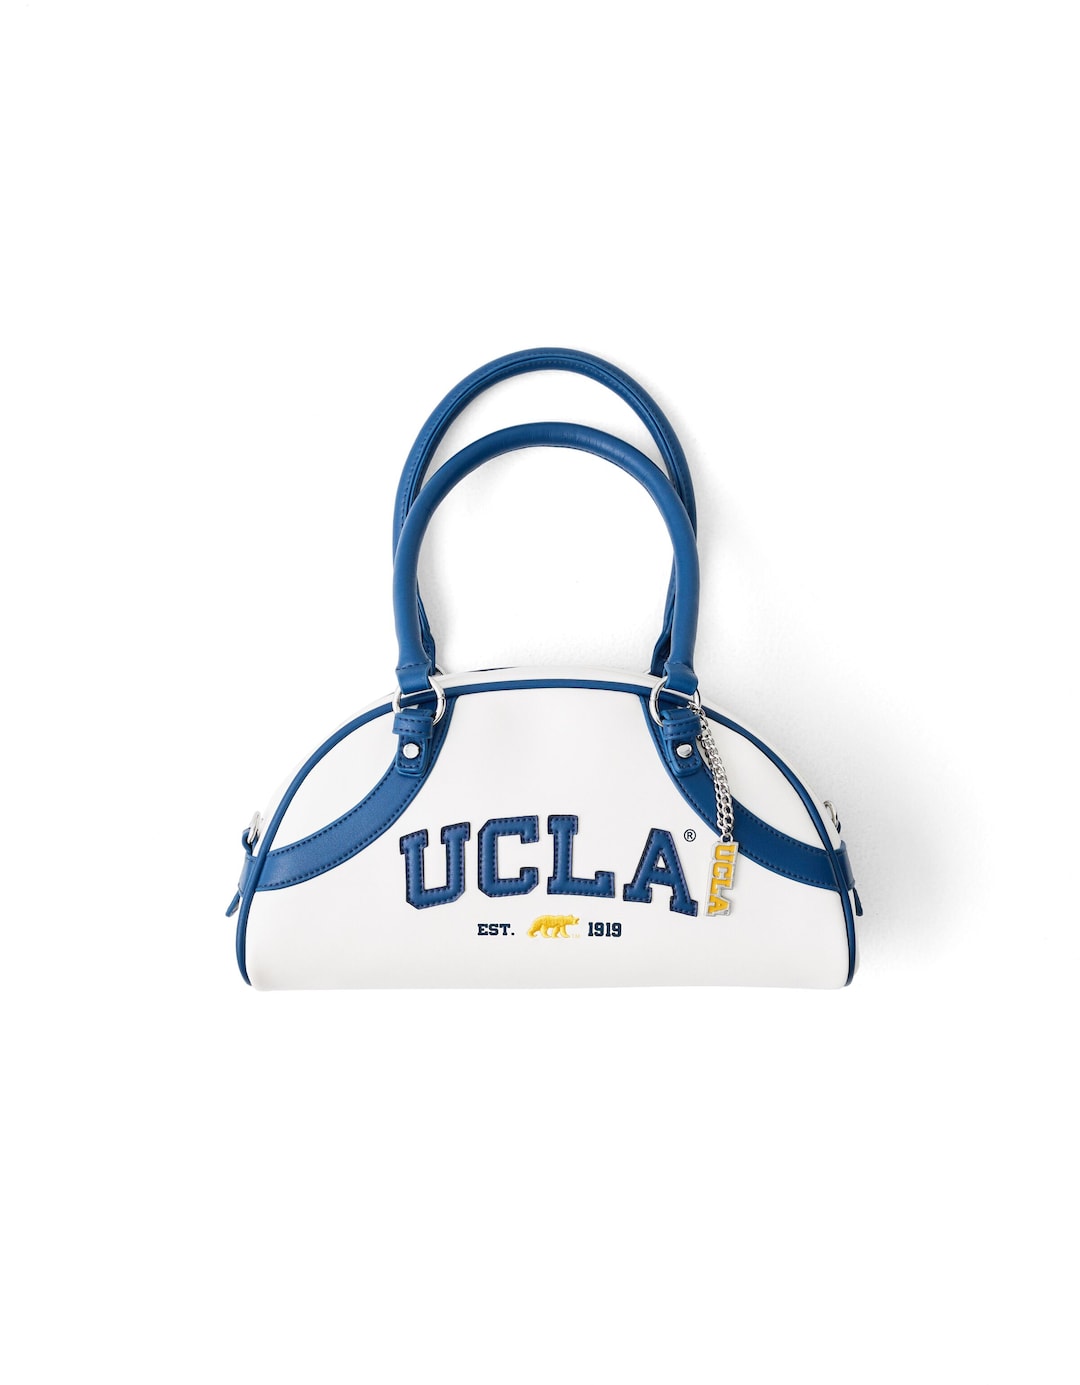 Mini UCLA shoulder bowling bag